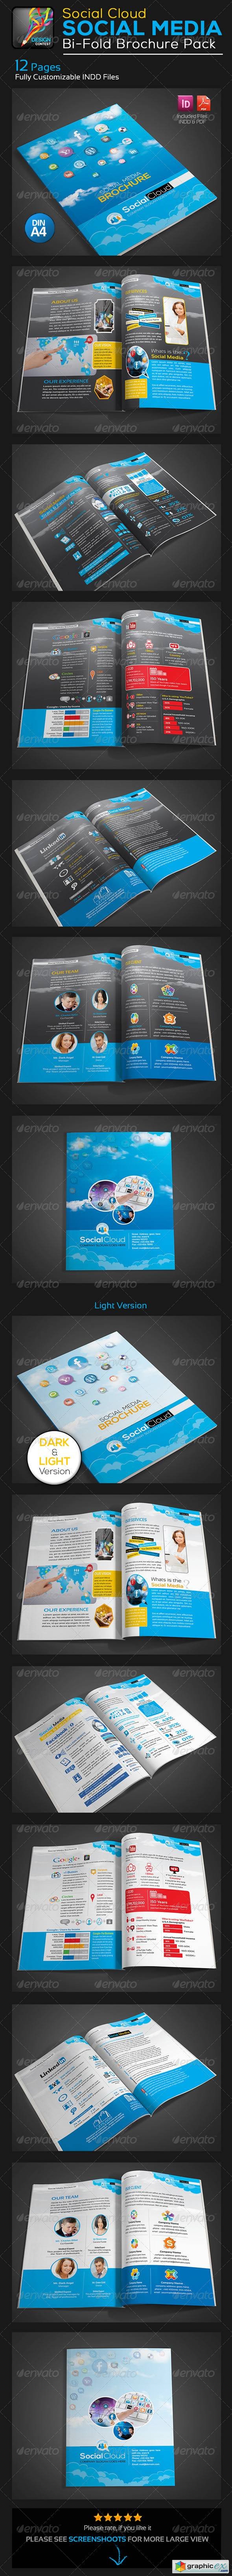 Social Cloud Social Media 12 Pages Brochure